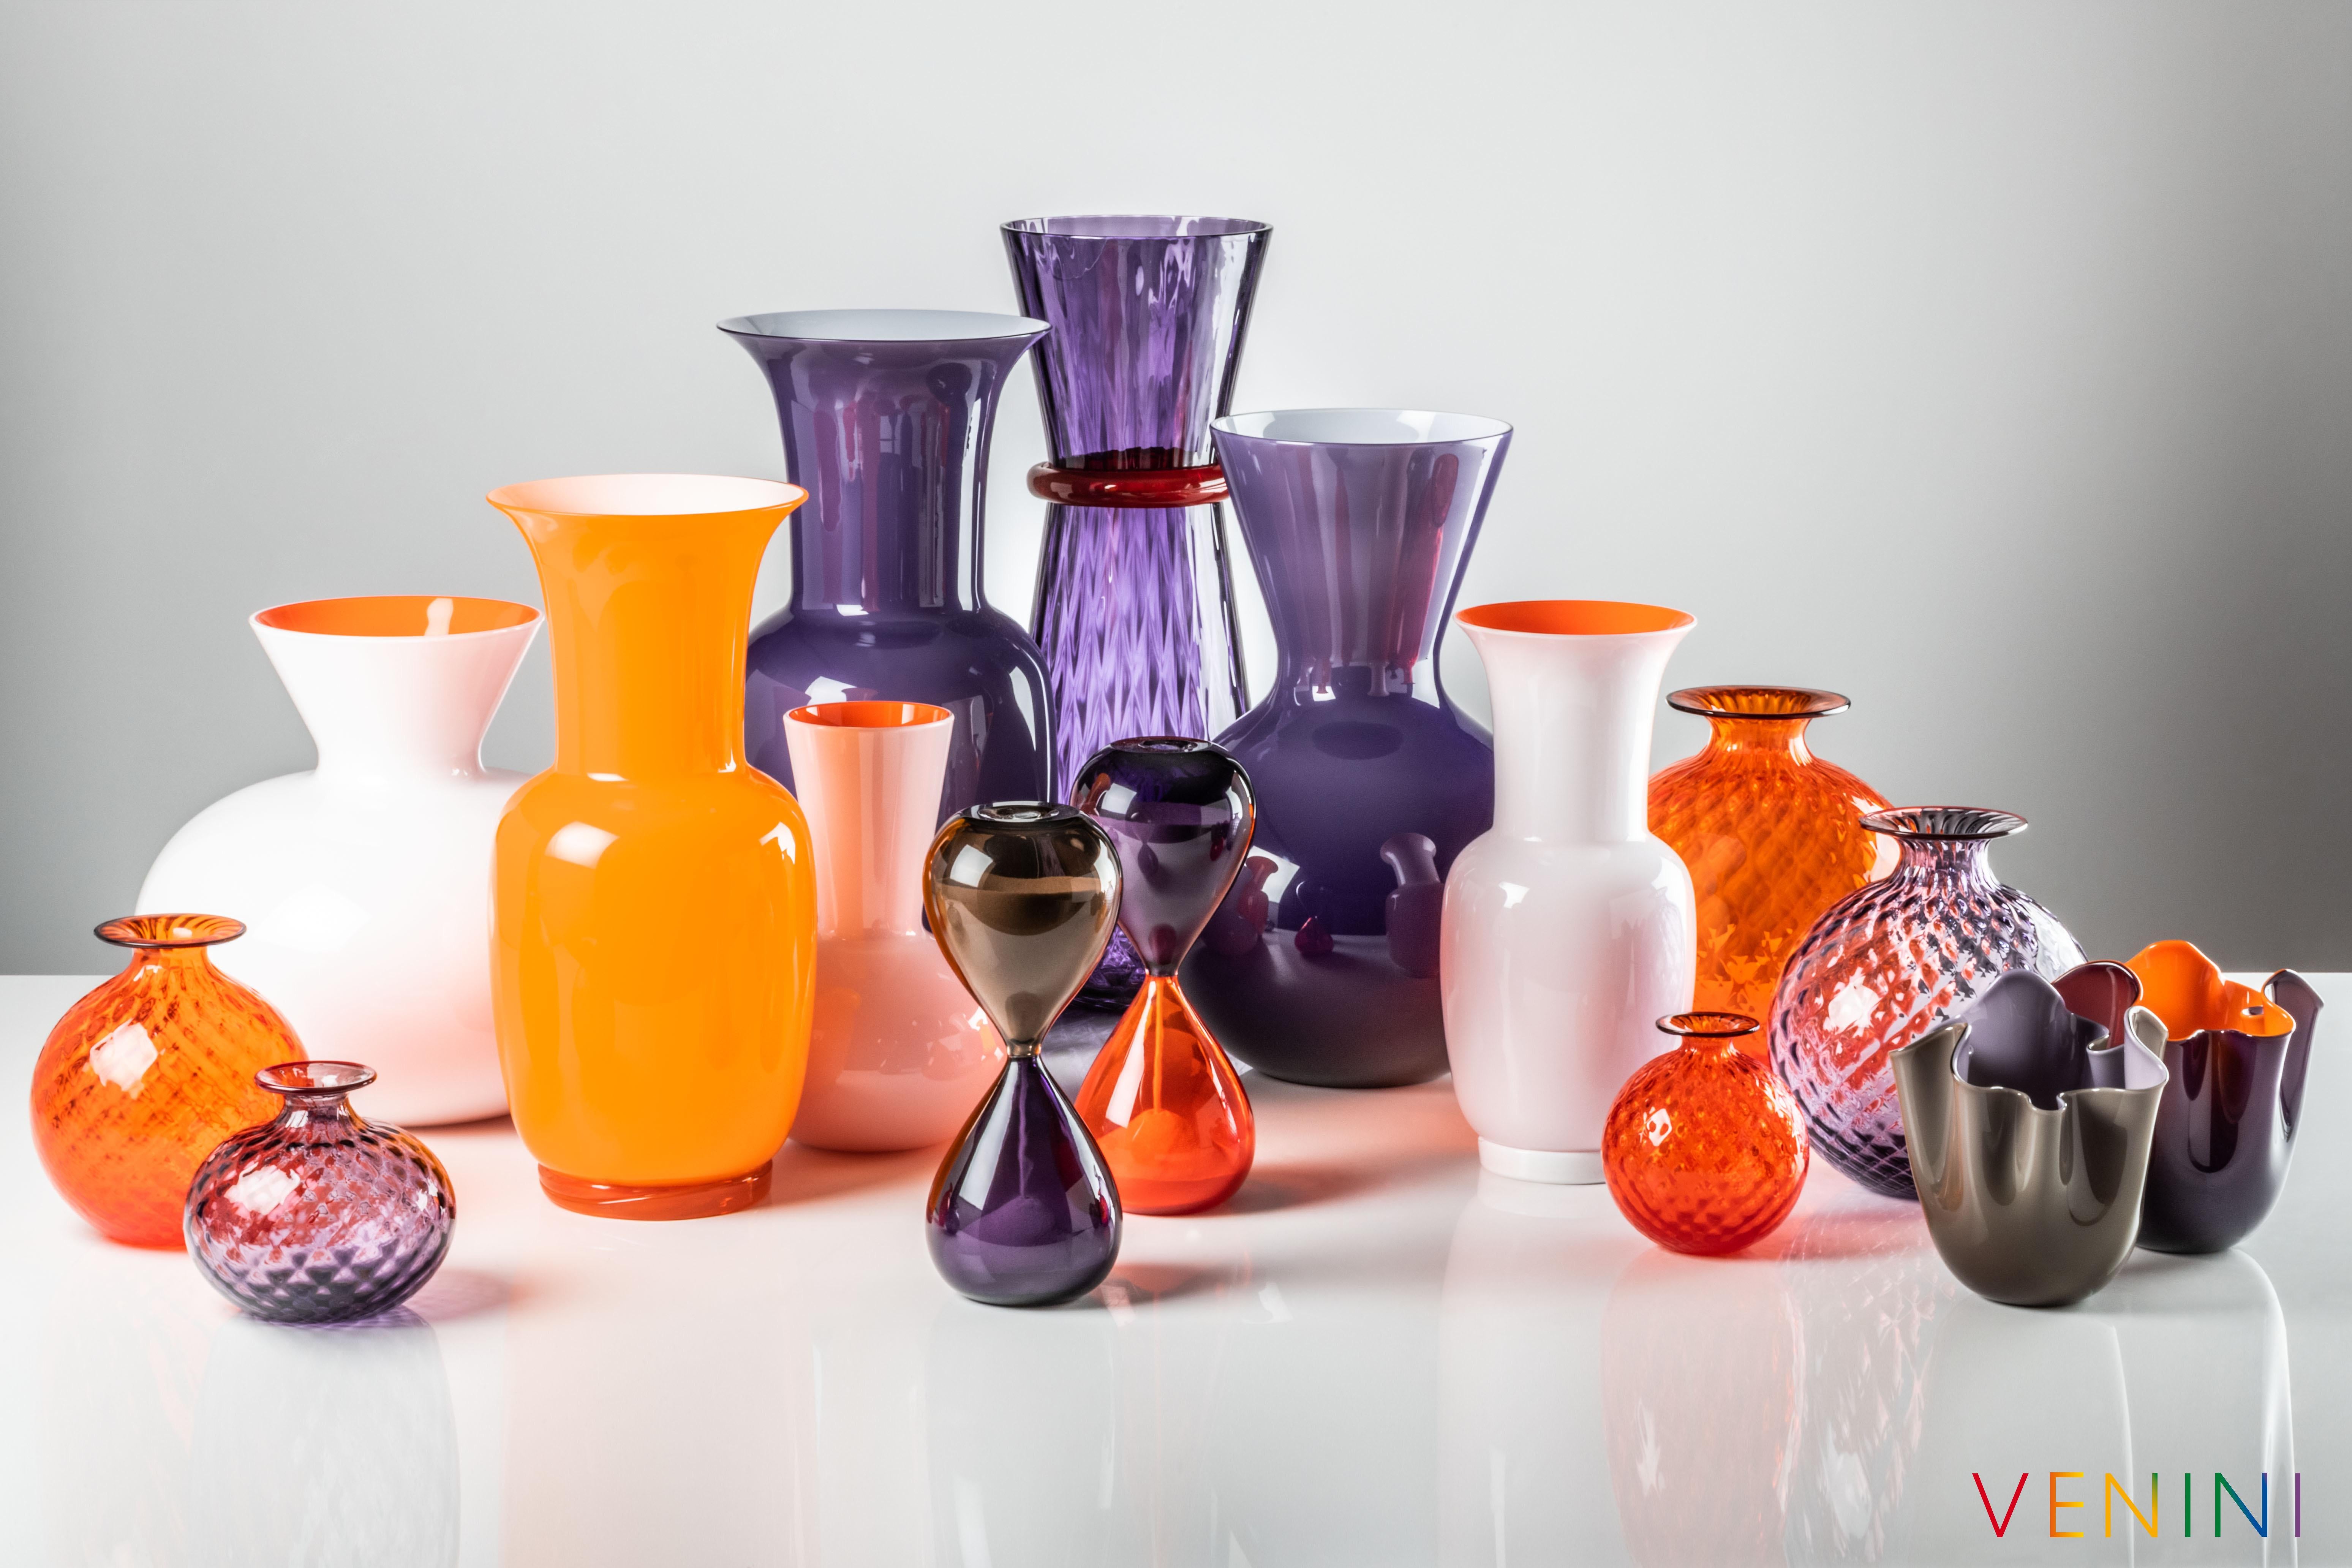 Die von Venini entworfene und hergestellte Glasvasen-Serie Idria besteht aus drei unterschiedlich geformten Vasen. Nur für den Innenbereich.

Abmessungen: Ø 26, H 36 cm.